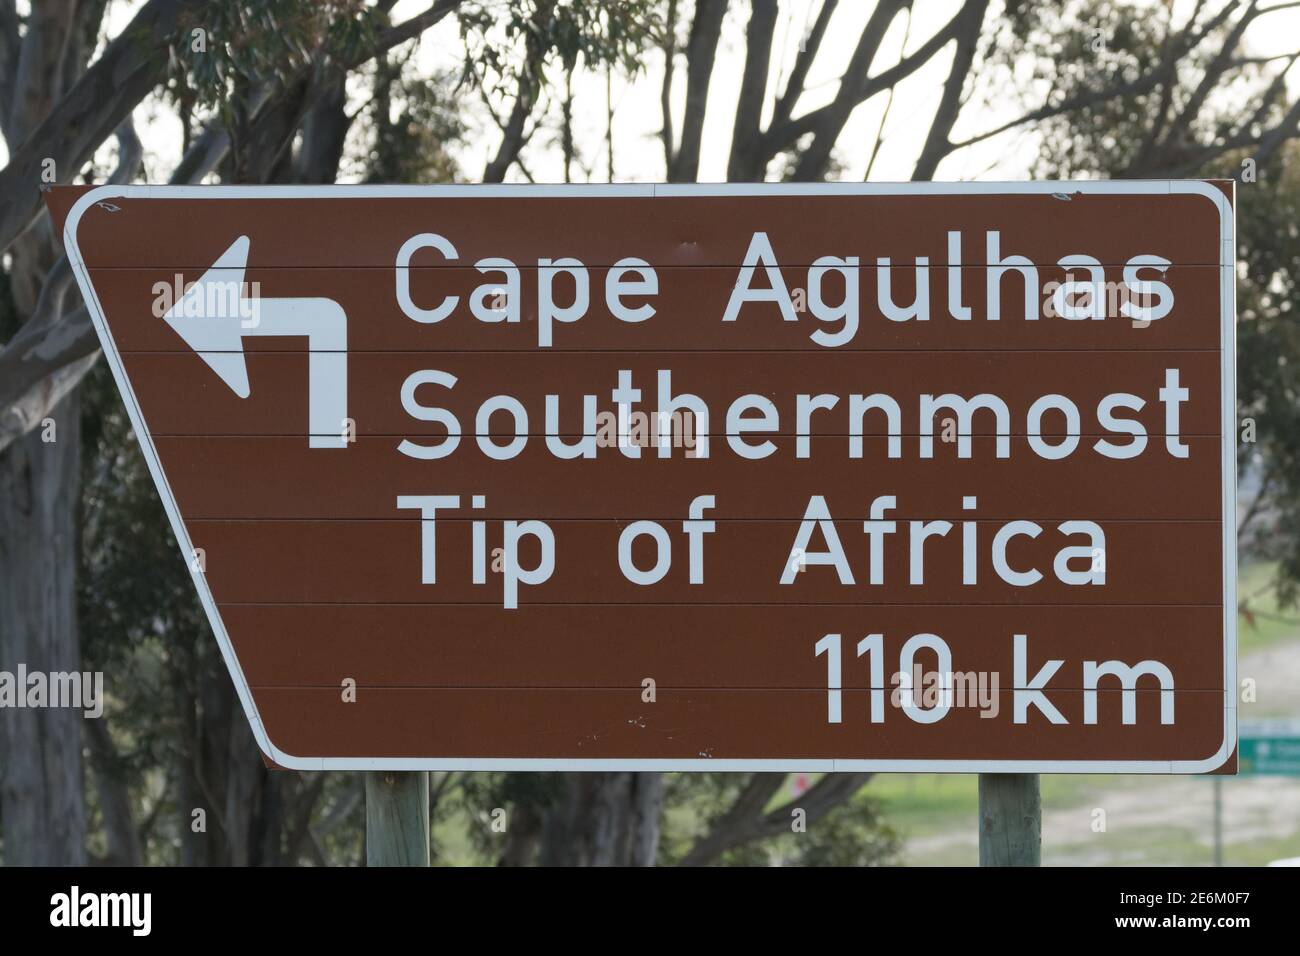 Straßenschild mit Richtung und Namen zum Kap Agulhas südlichsten Spitze von Afrika, das ein Touristenziel in Süden ist Afrika Stockfoto